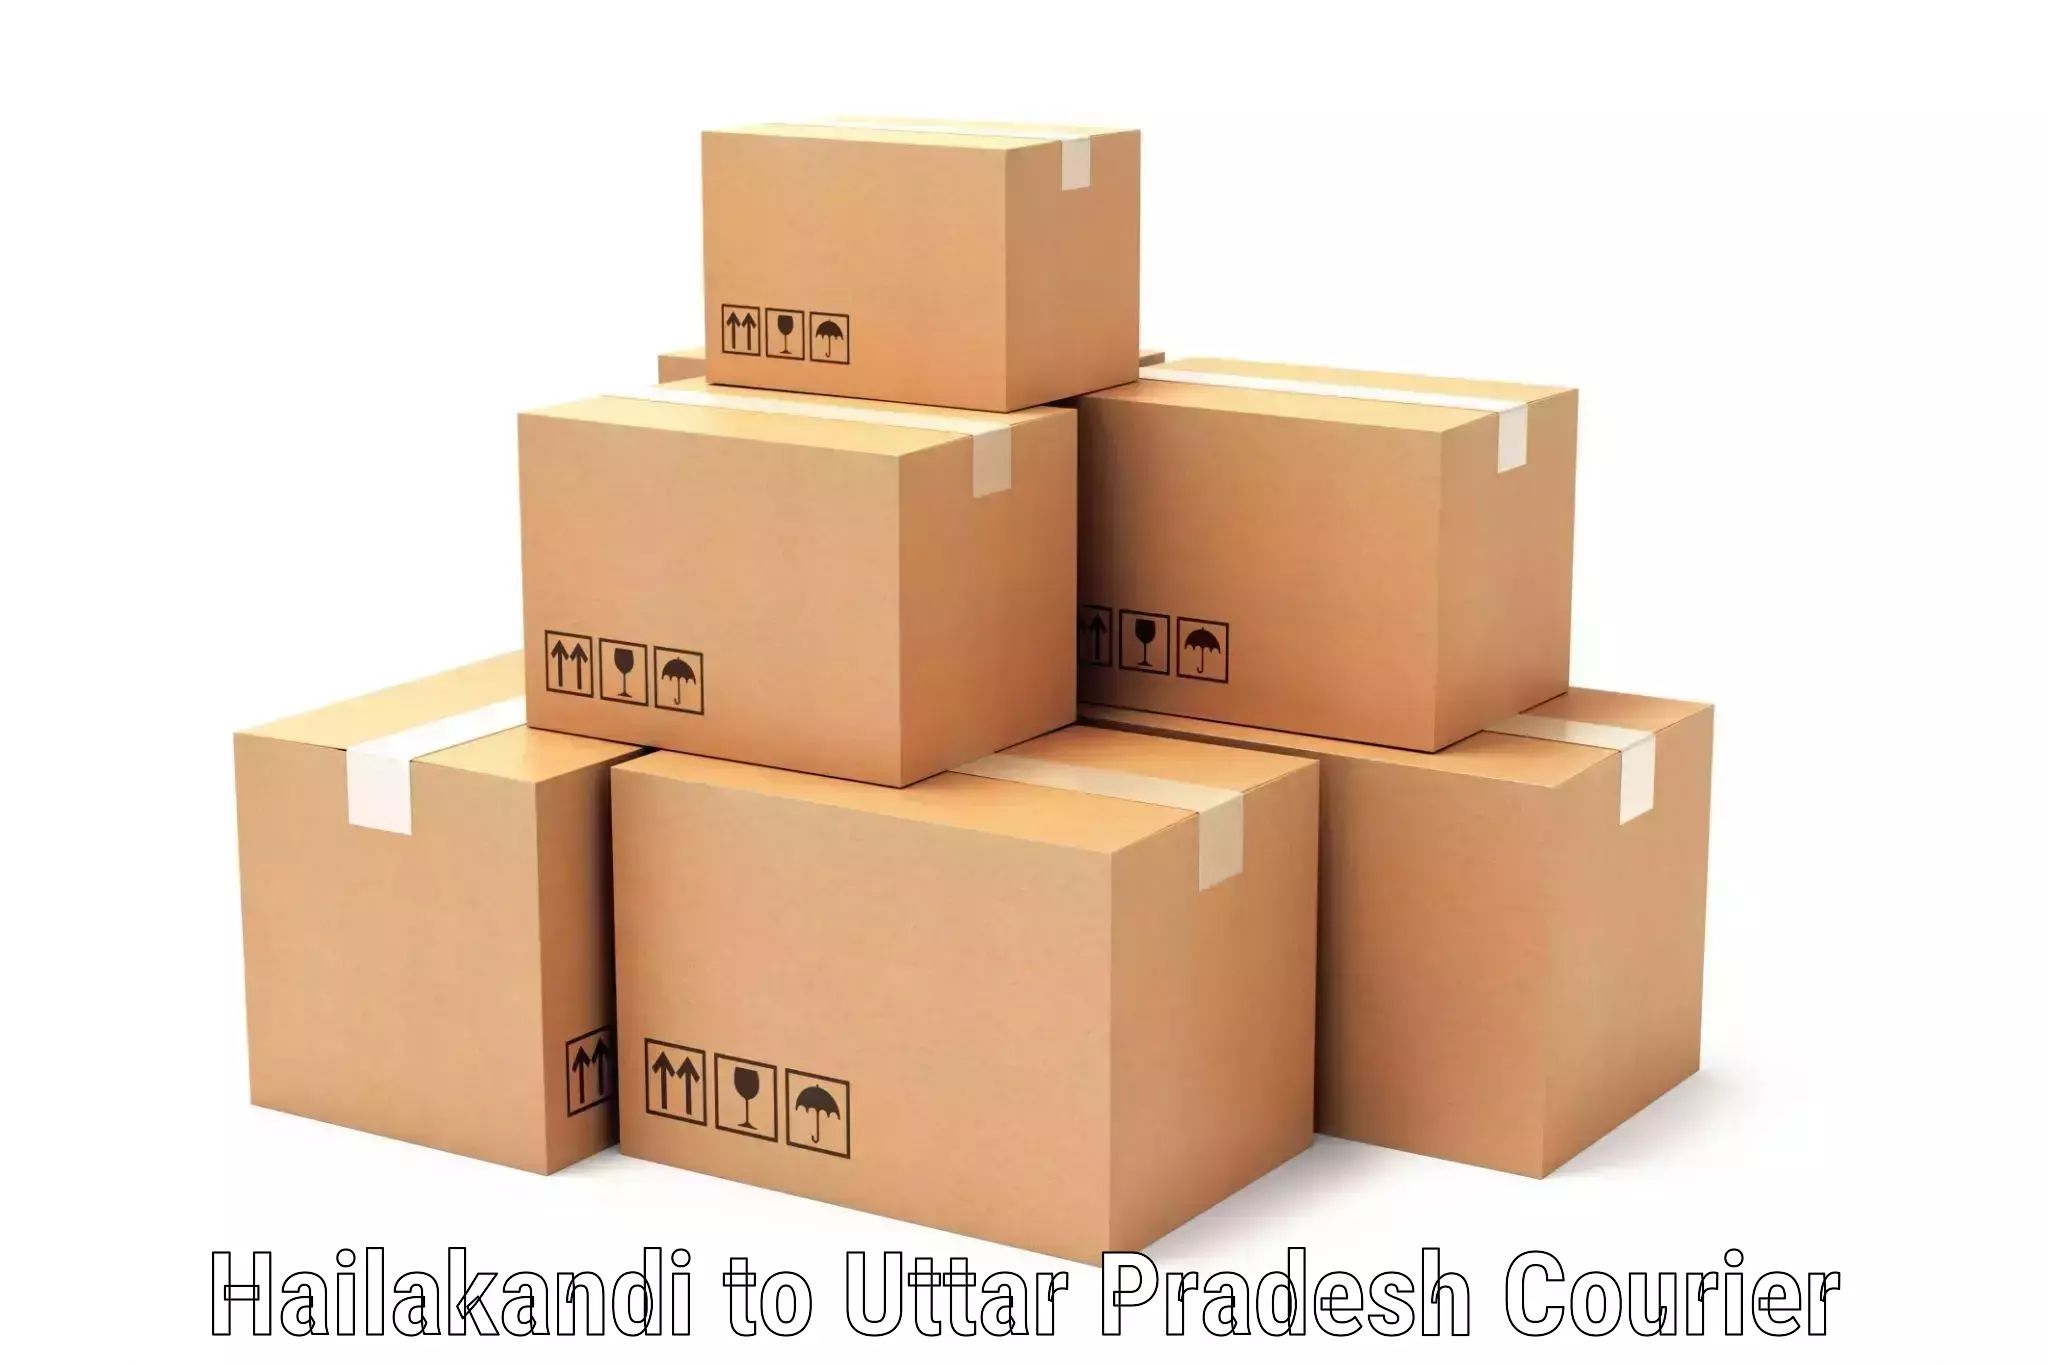 Urban courier service Hailakandi to Thakurdwara